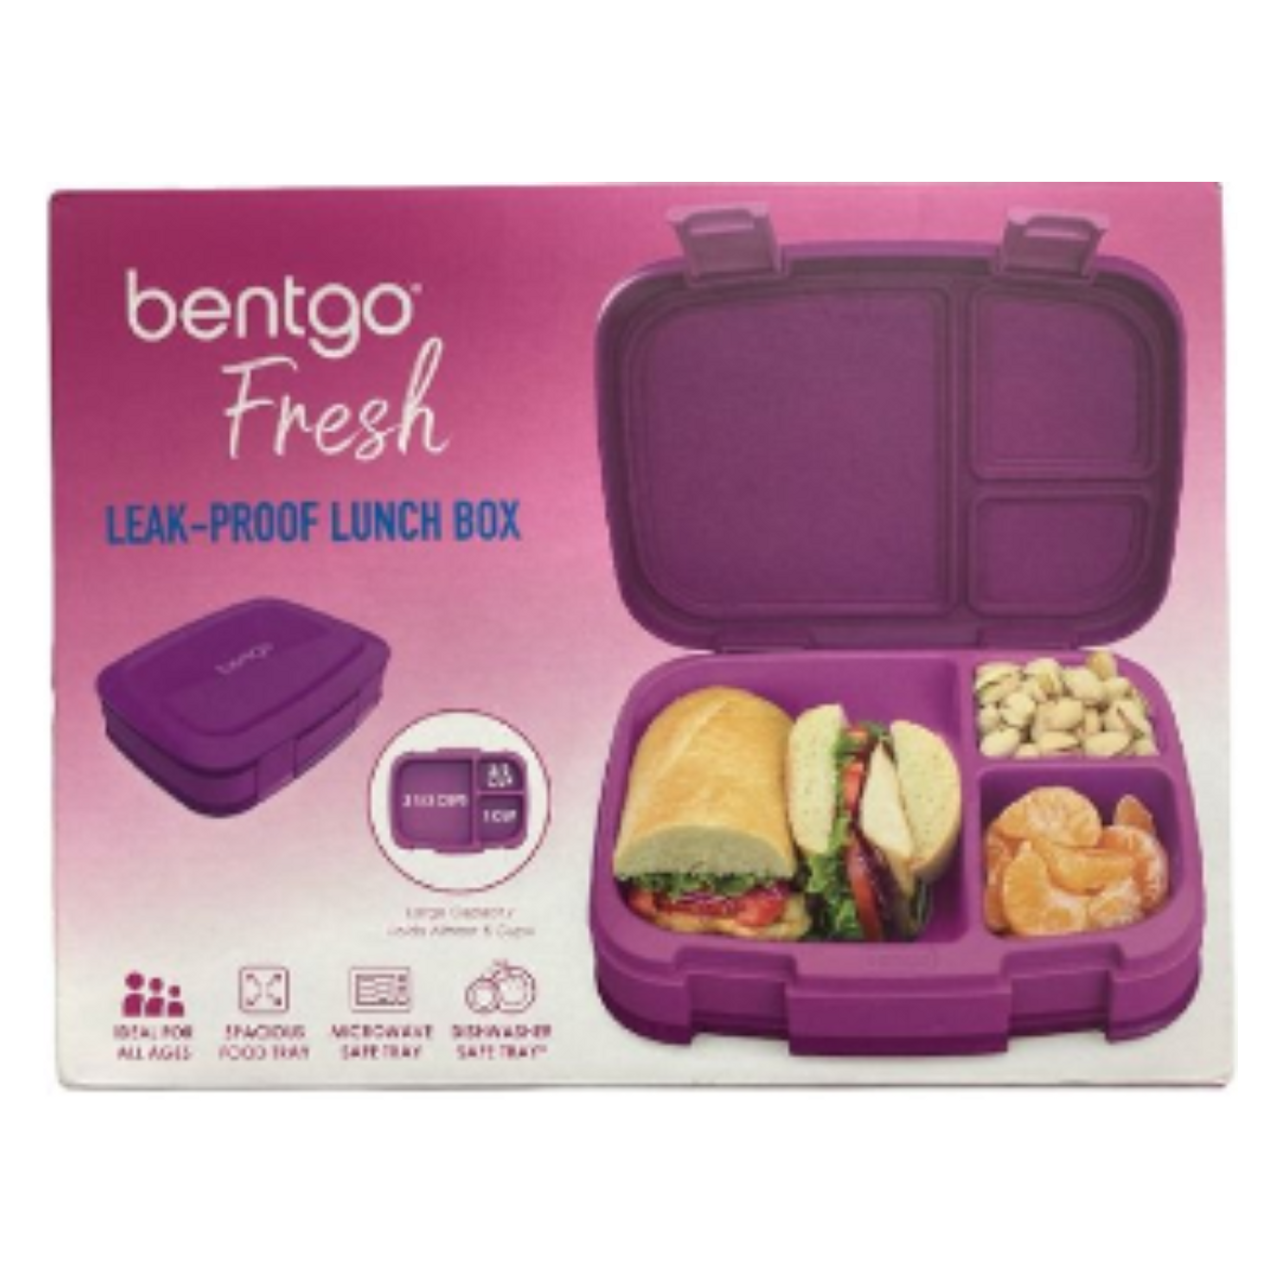 Bentgo Fresh Leak-Proof Lunch Box product image